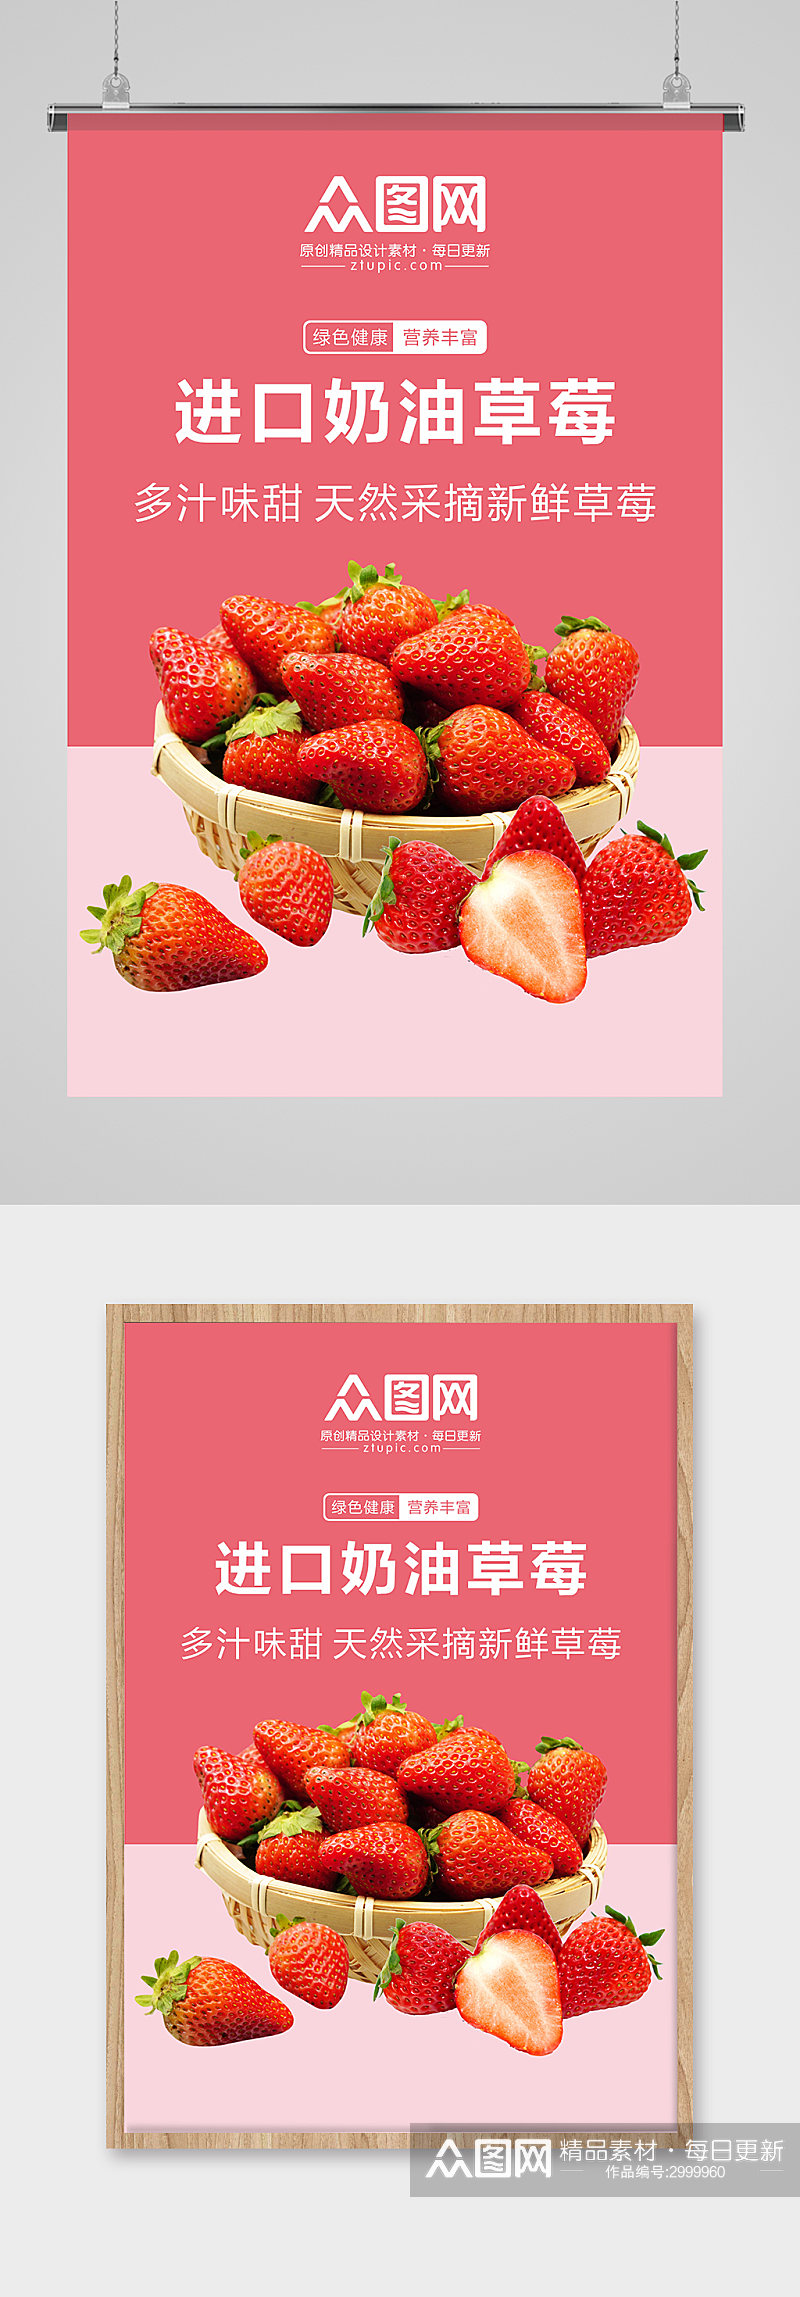 大气新鲜草莓海报素材